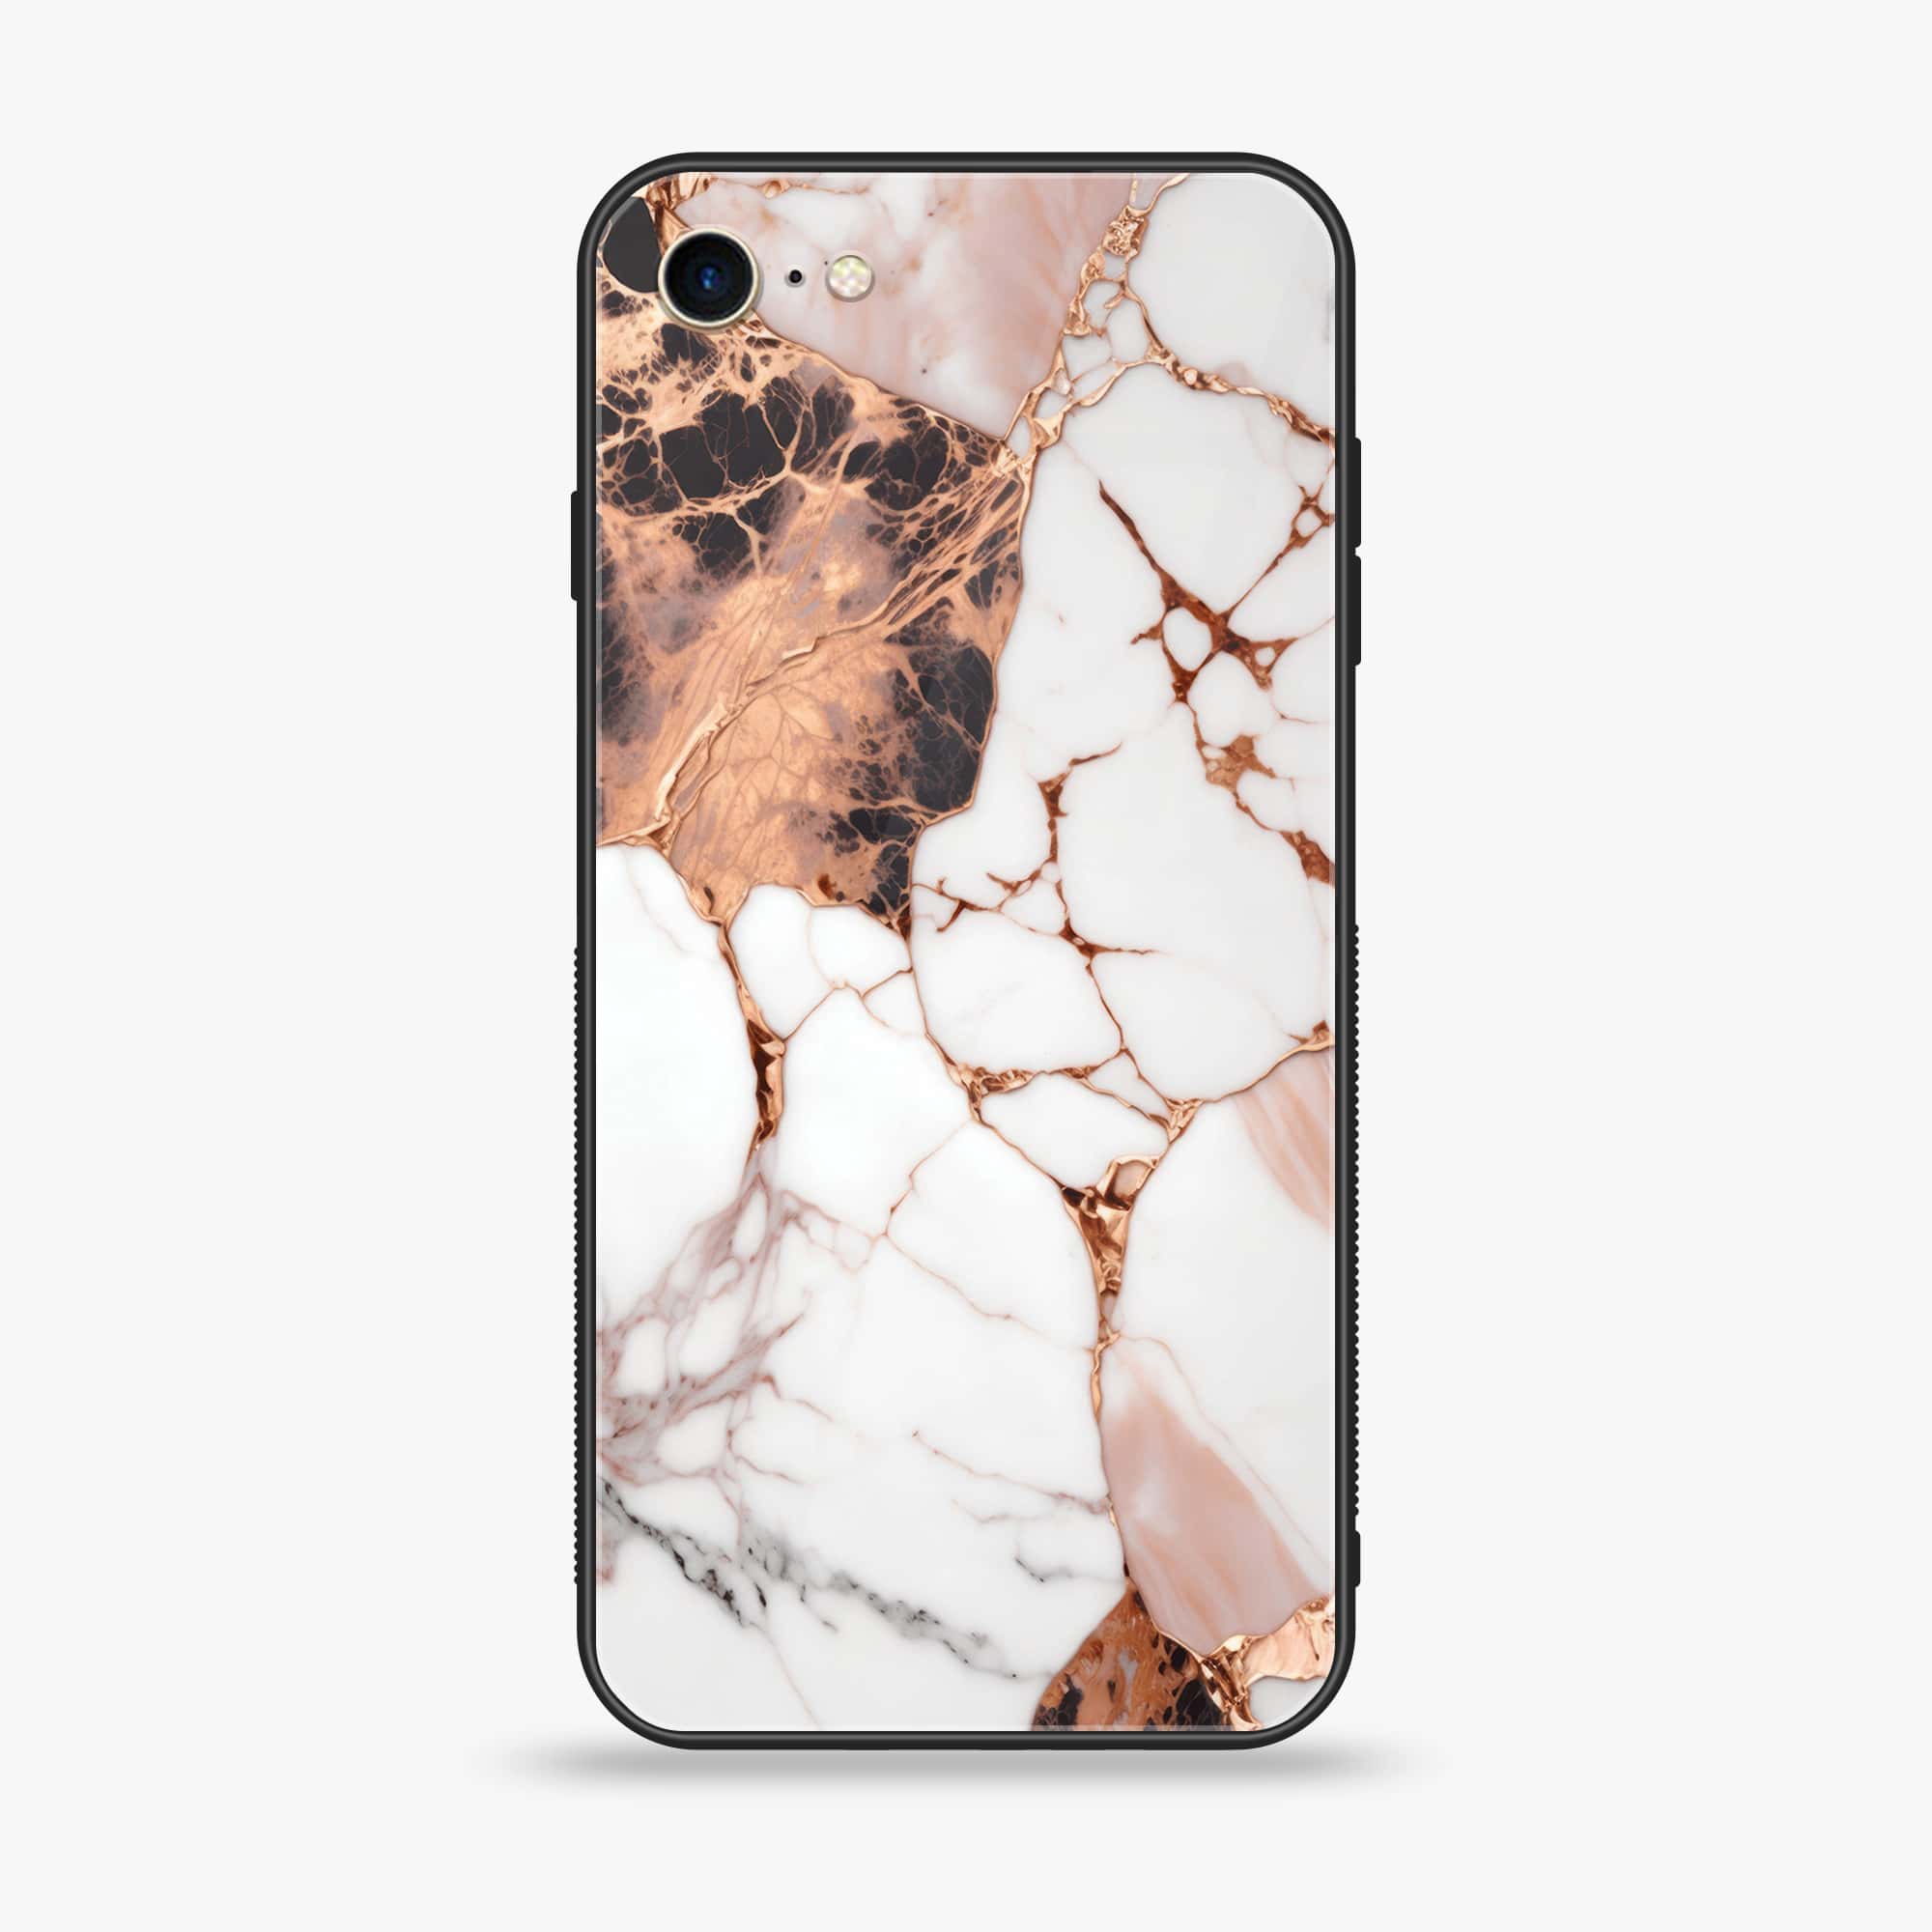 iPhone 6Plus - Liquid Marble Series - Premium Printed Glass soft Bumper shock Proof Case